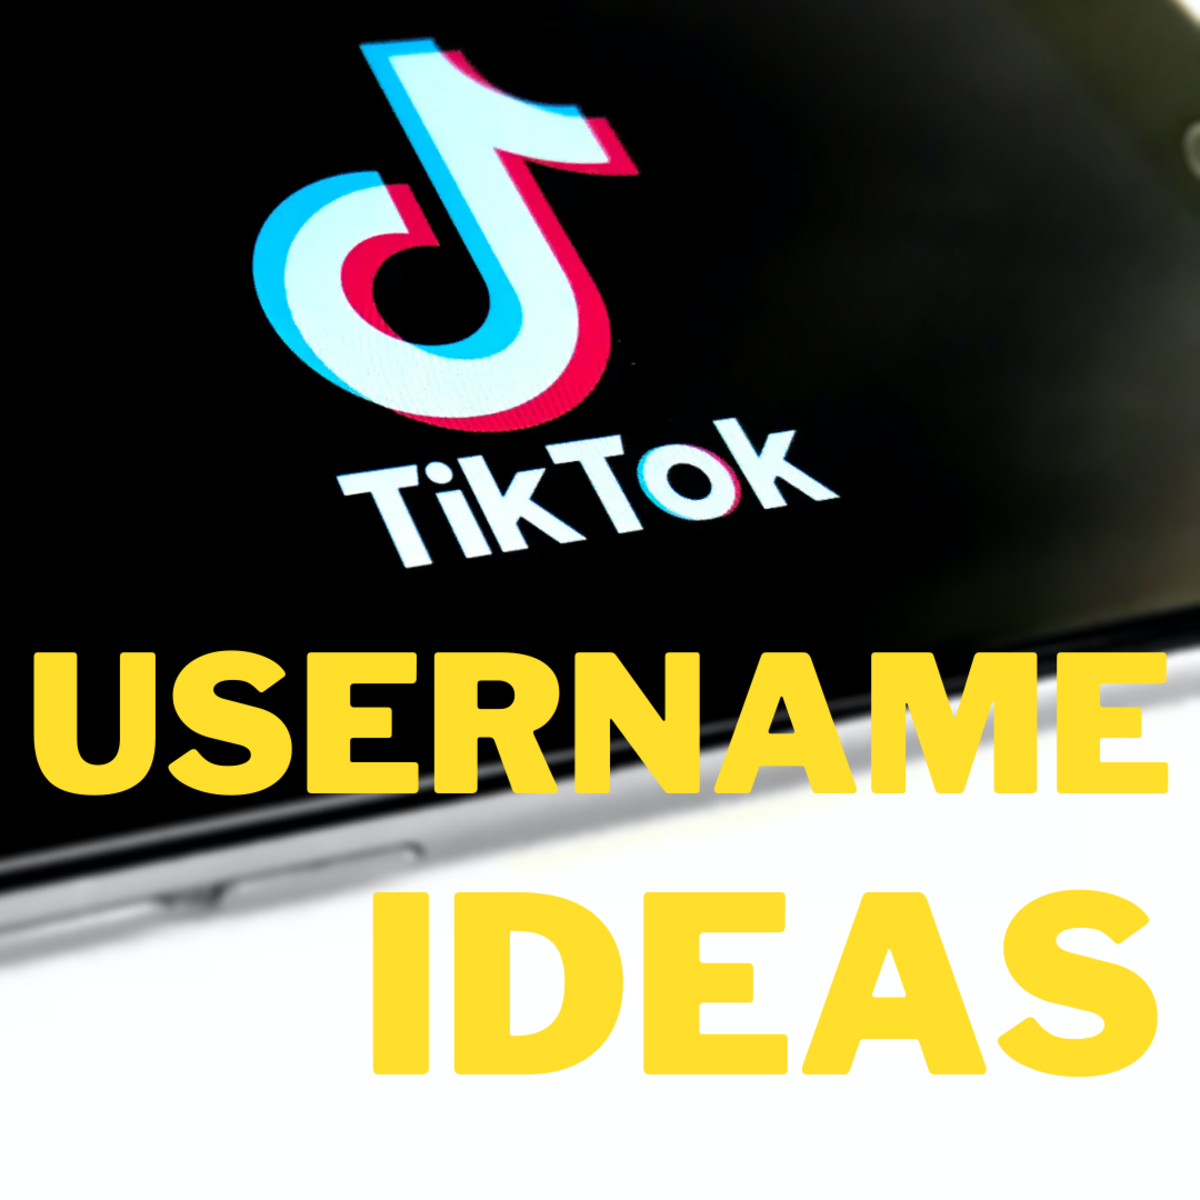 200+ TikTok Username Ideas and Name Generator